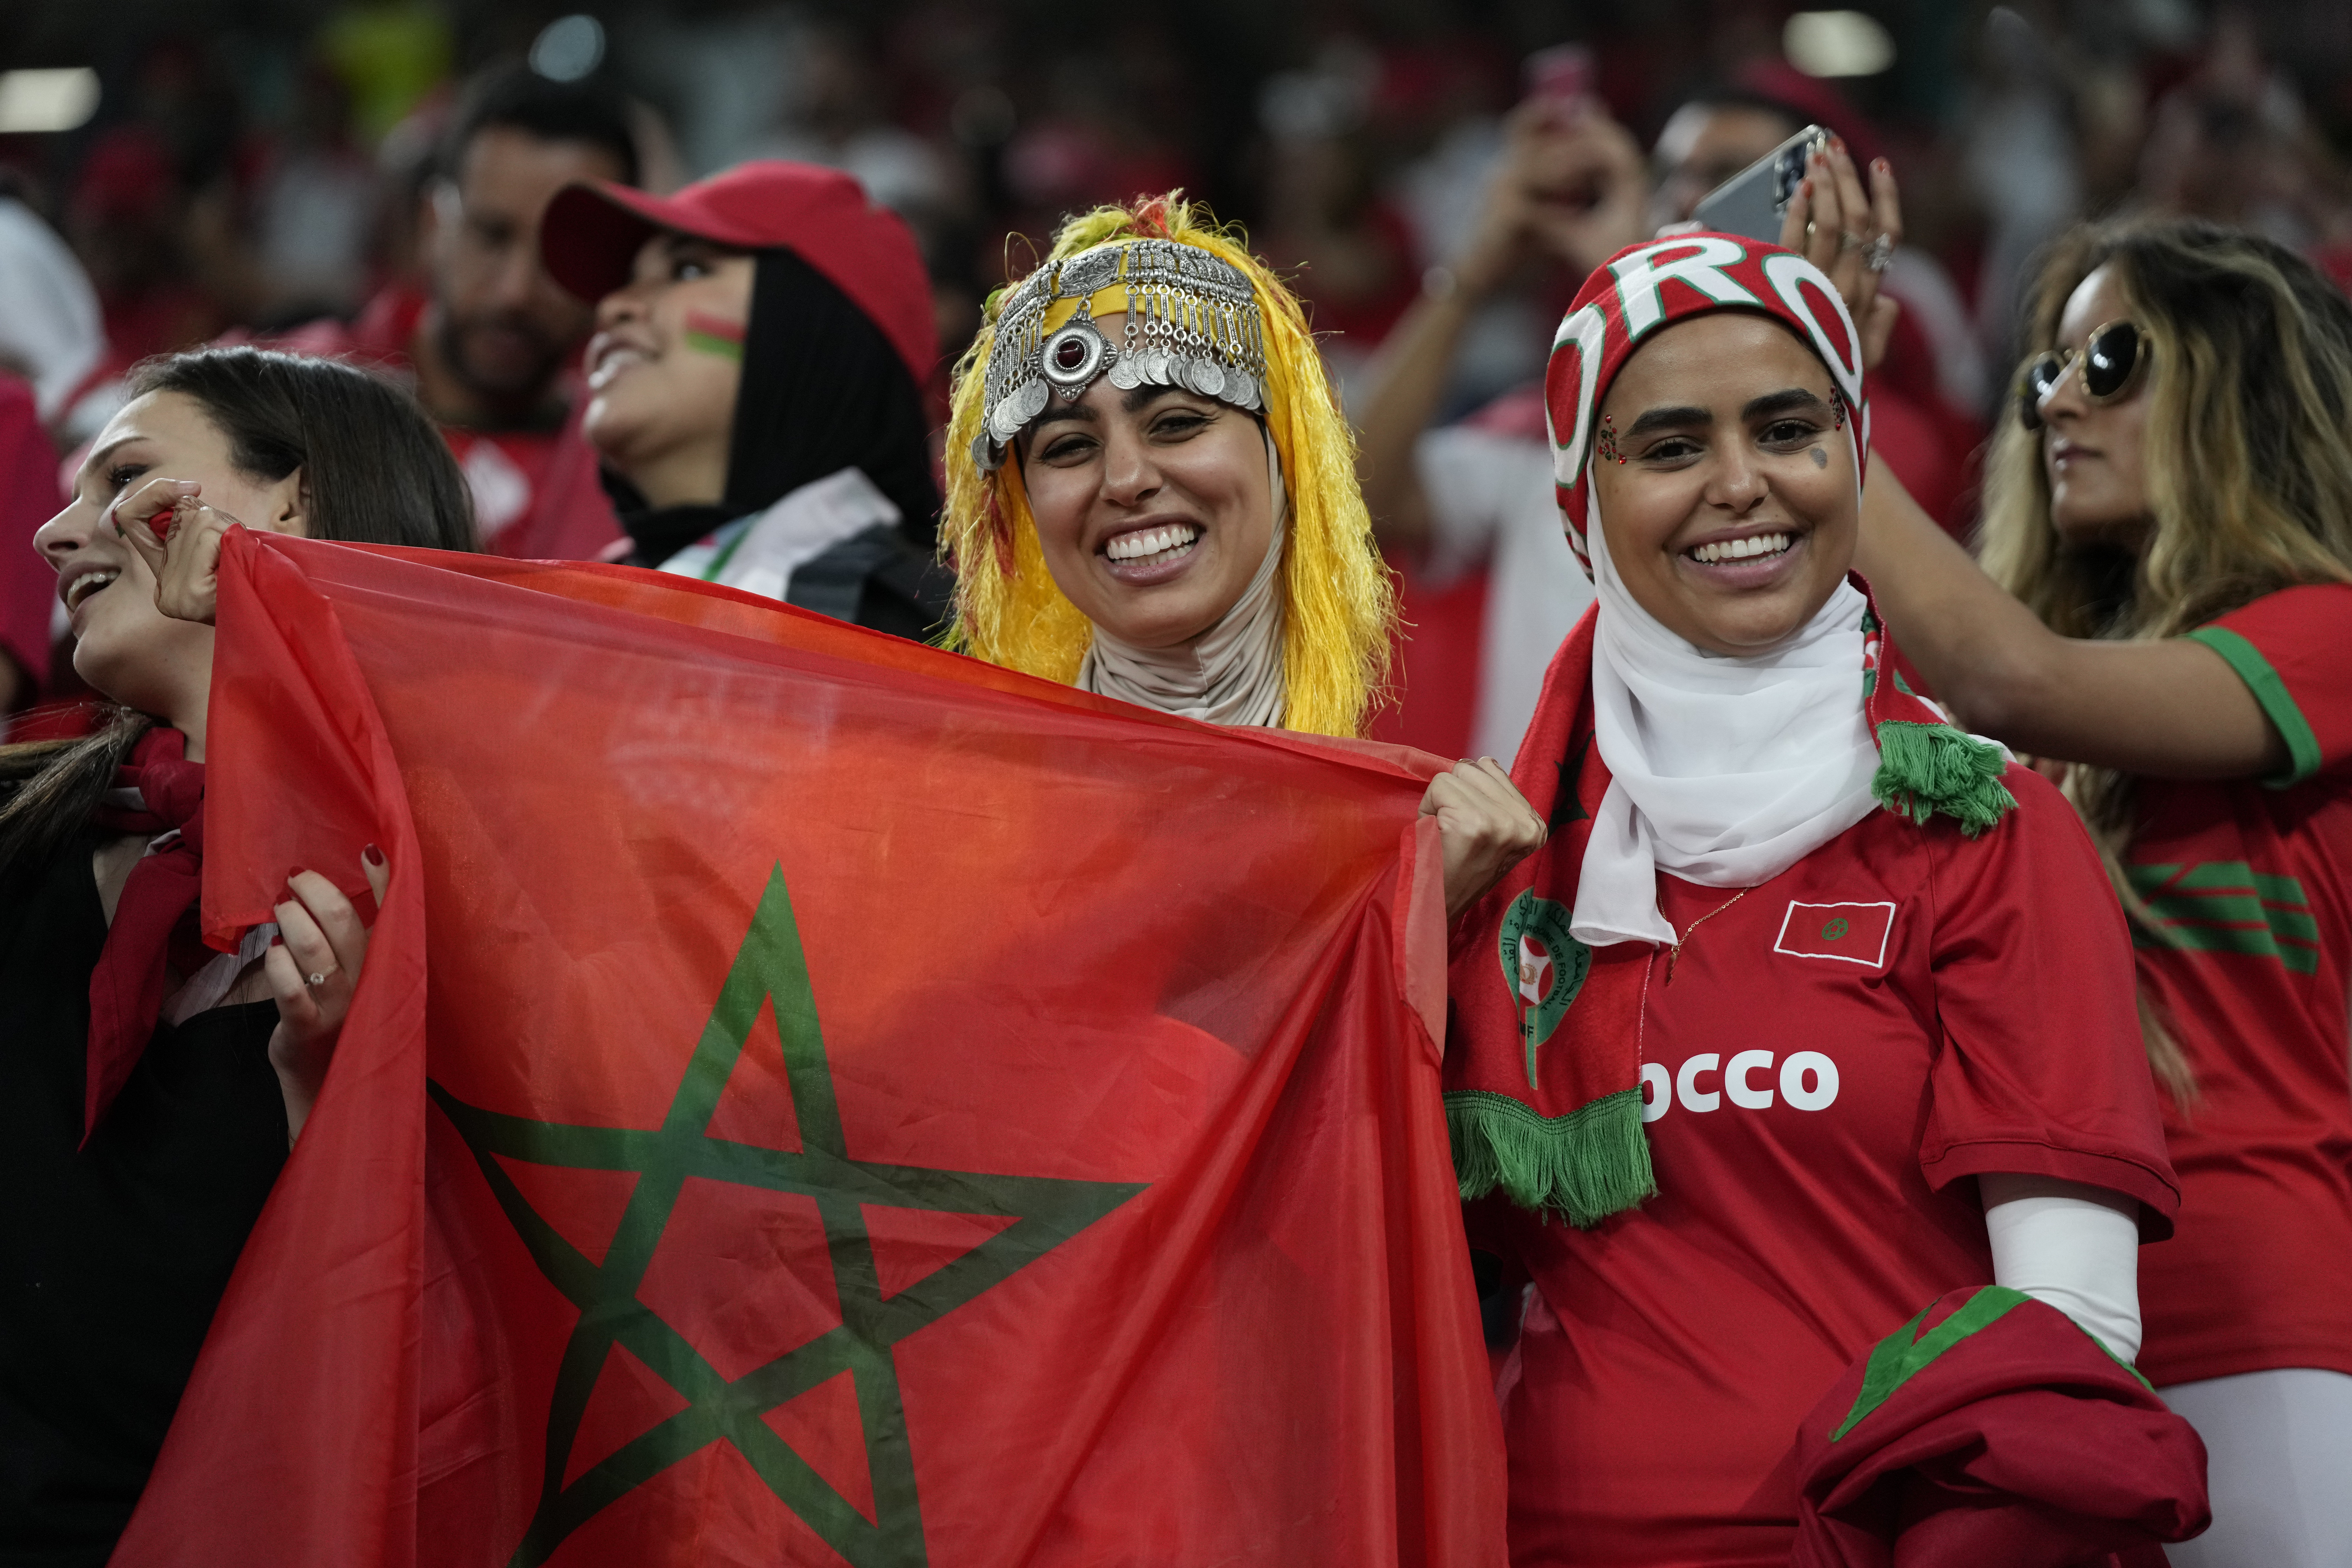 Los marroquíes divididos ante el partido: “Estoy entre papá y mamá”